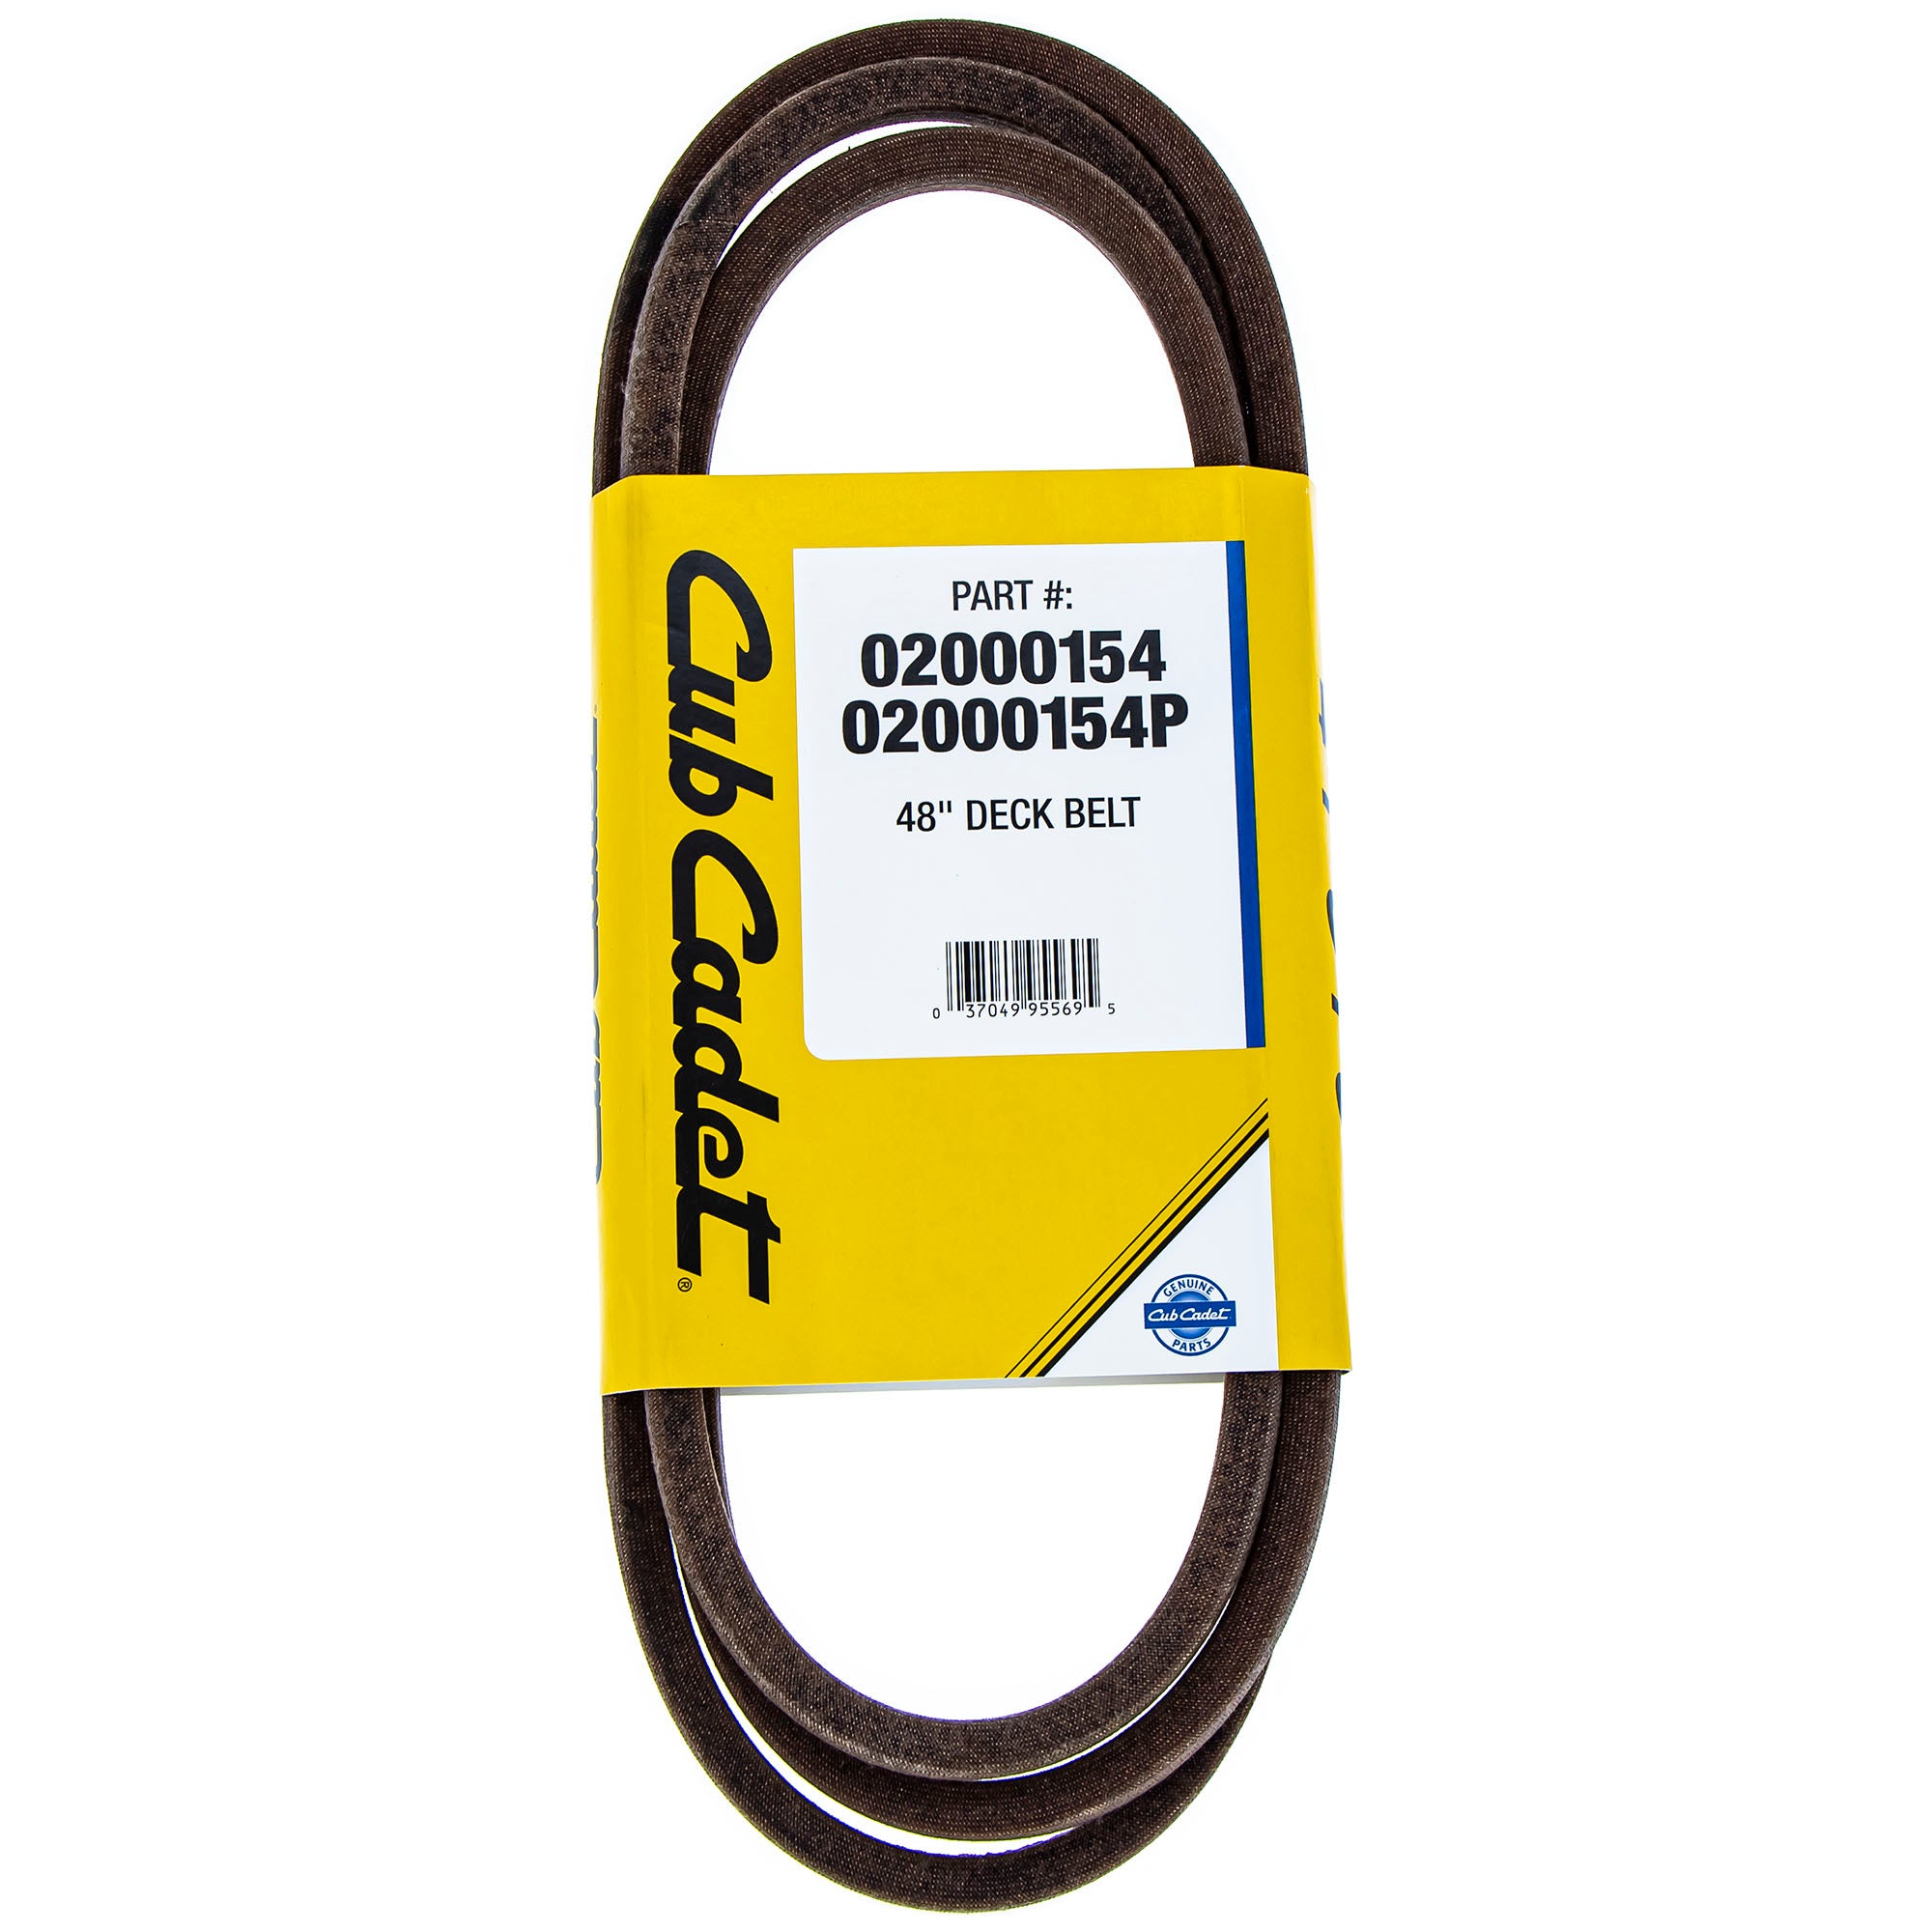 CUB CADET 02000154P Deck Belt